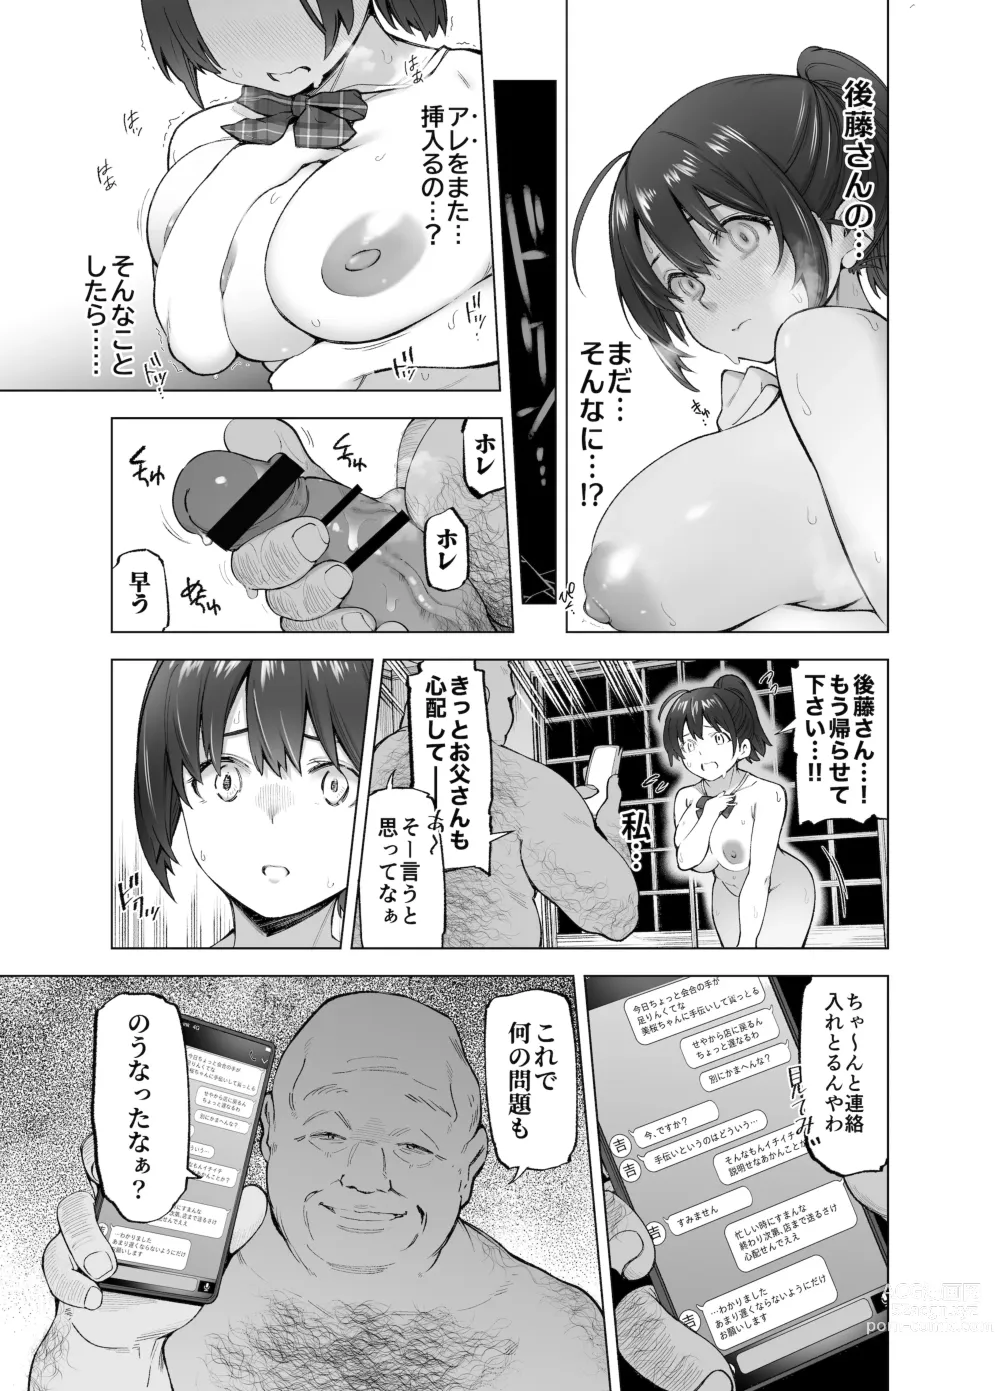 Page 10 of doujinshi Sakura Saku Chiru Hanabira Tsubomi Hokorobibu ~Ossan no Nikutsubo e to Ochi Hateta Saiai no Osananajimi Yoshioka Mio~